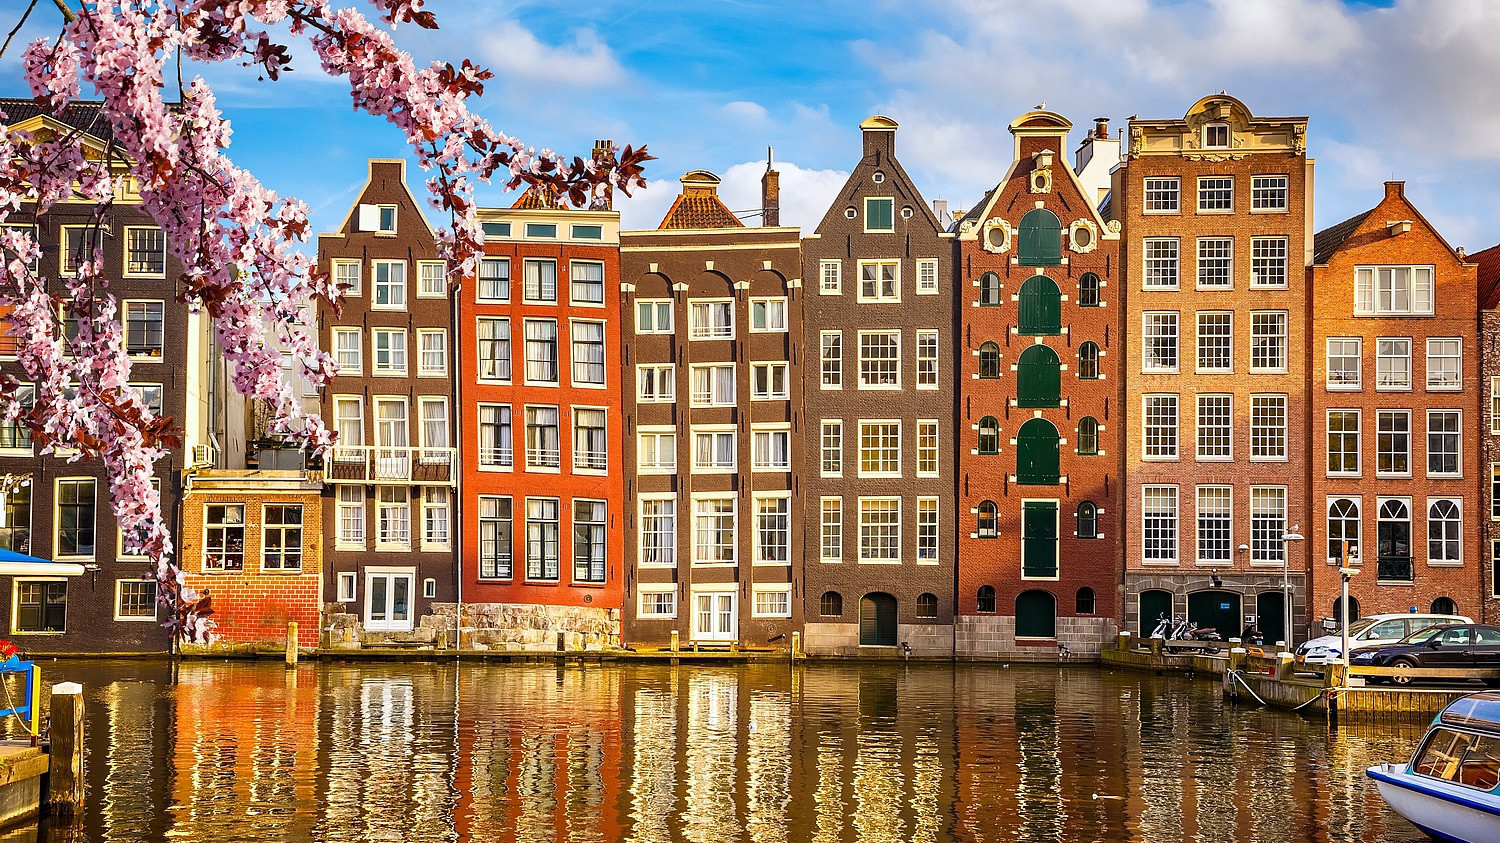 Szerinted megéri kimenni külföldre? – Hollandiában az élet